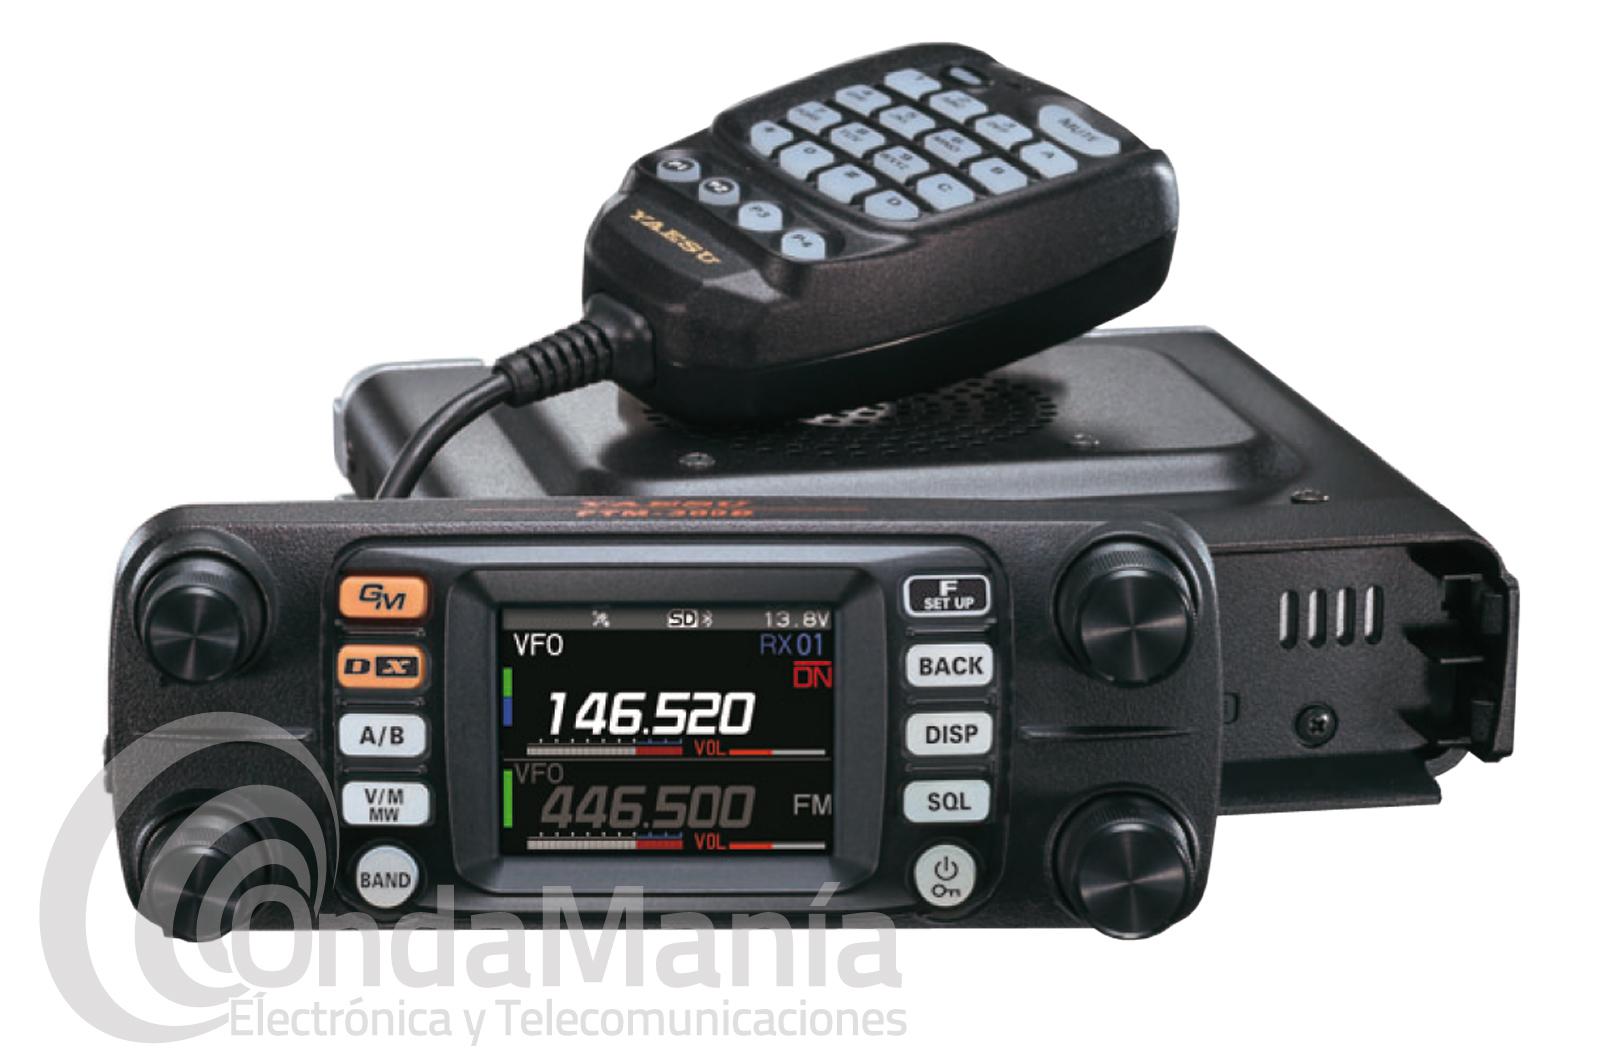 EMISORA DOBLE BANDA VHF/UHF YAESU FTM-300DE ANALOGICA Y DIGITAL CON 50 W DE  POTENCIA, YAESU